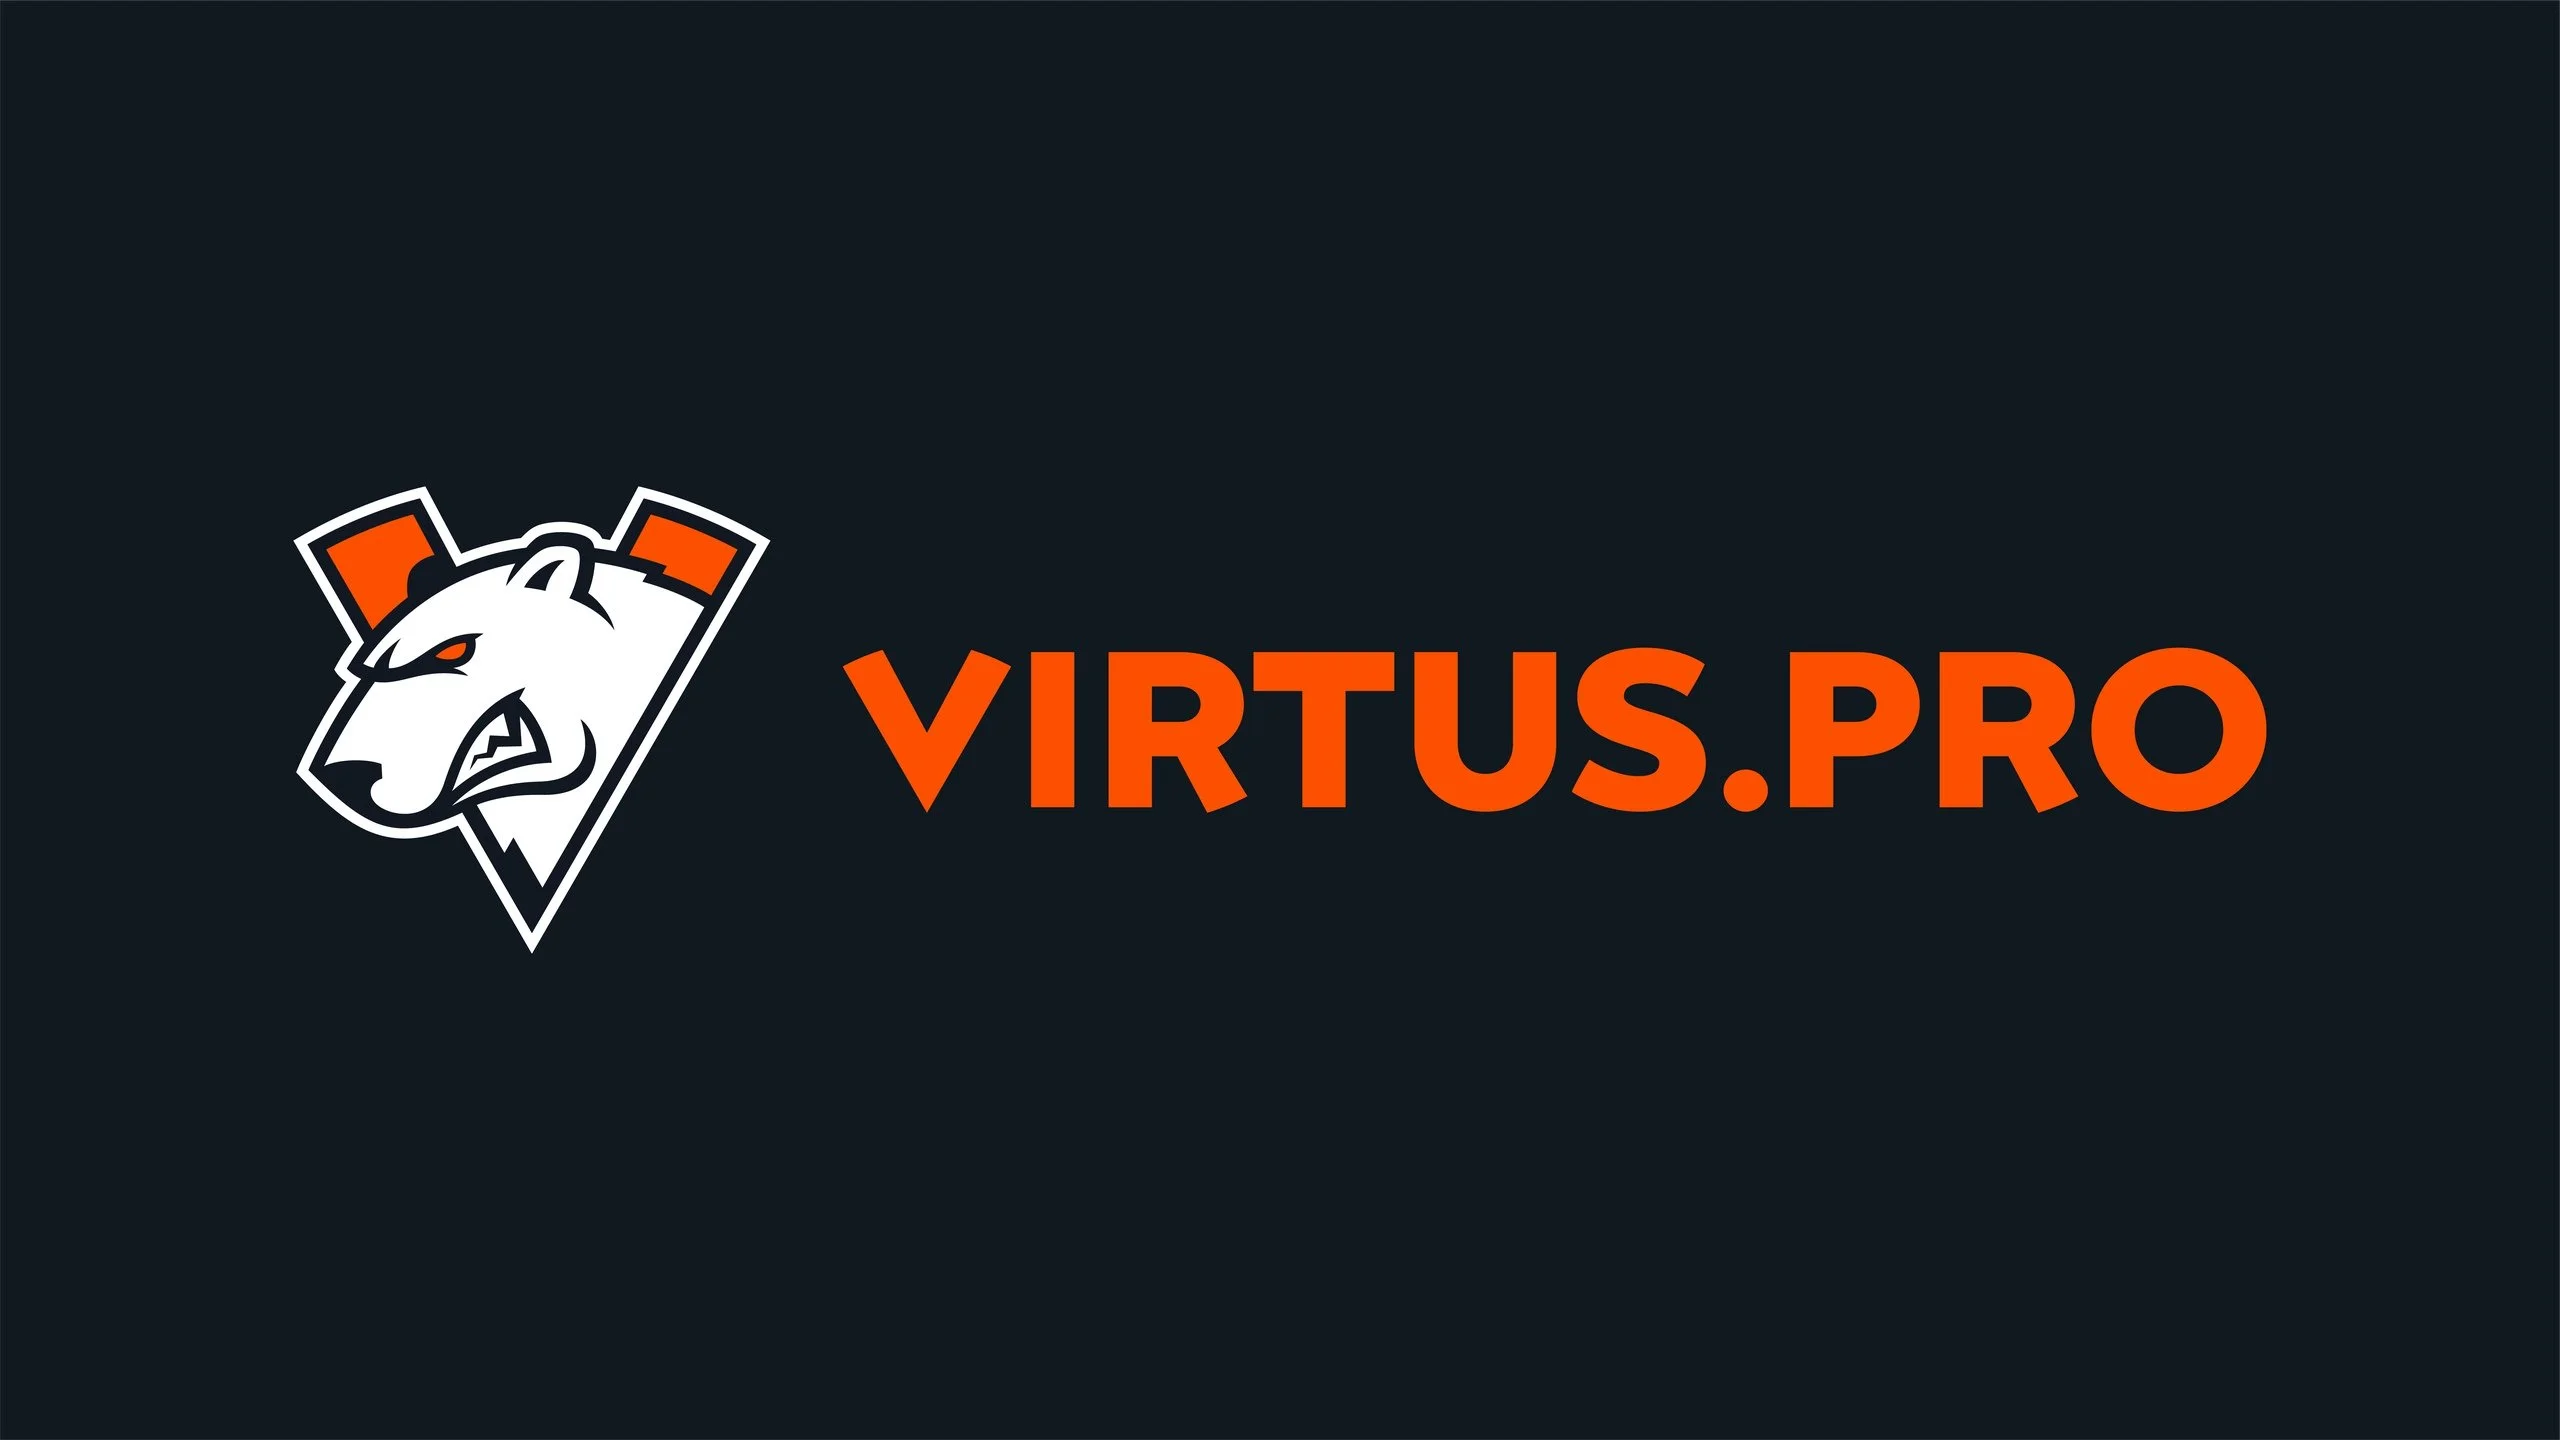 Virtus.pro представила форму для болельщиков. Не обошлось без шуток про Apex и состав по Dota 2 - фото 1